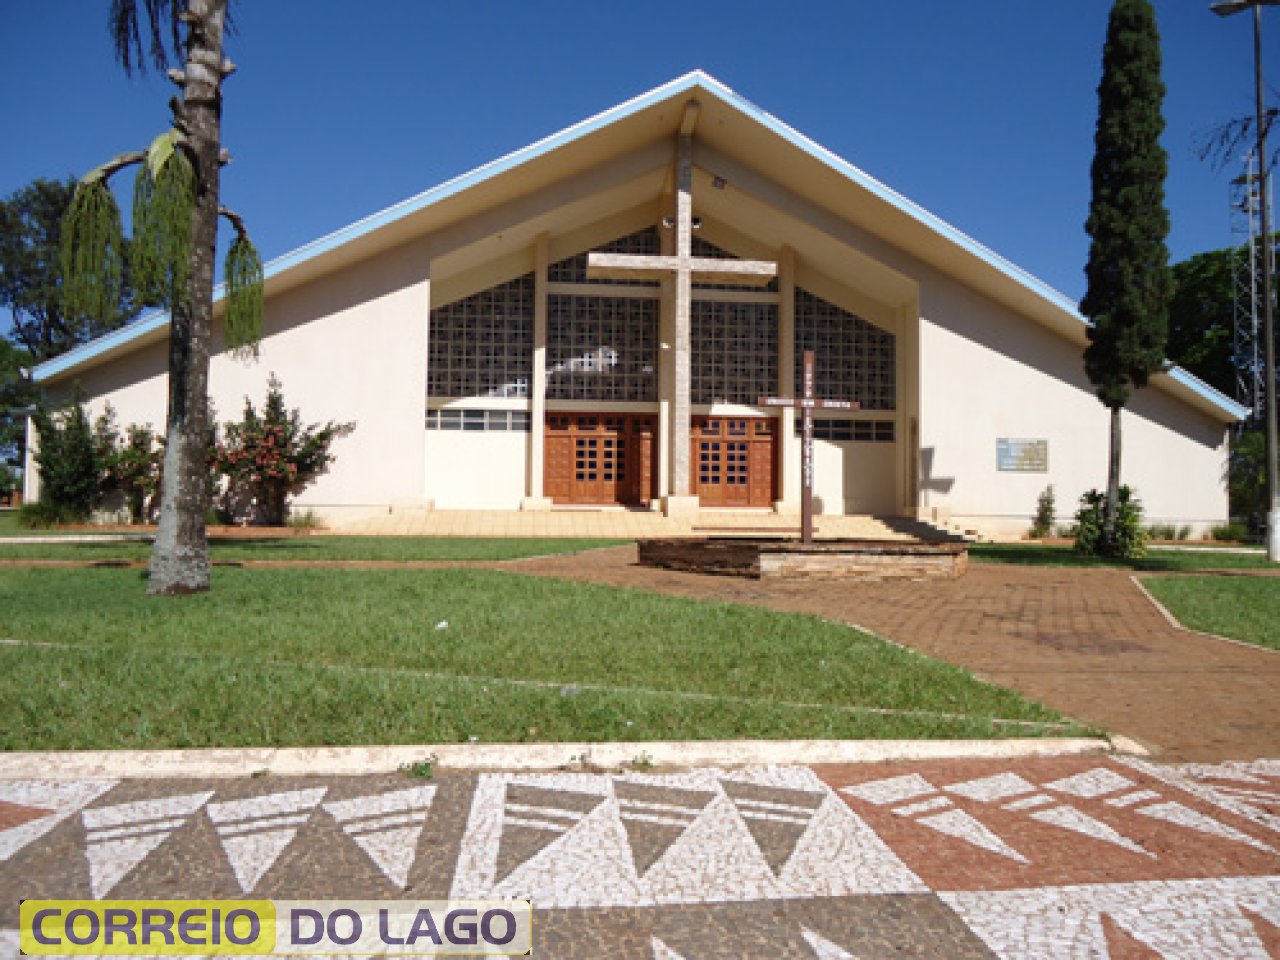 Igreja Católica Santo Antônio, inaugurada em 1982. Atualmente em reformas (2015).